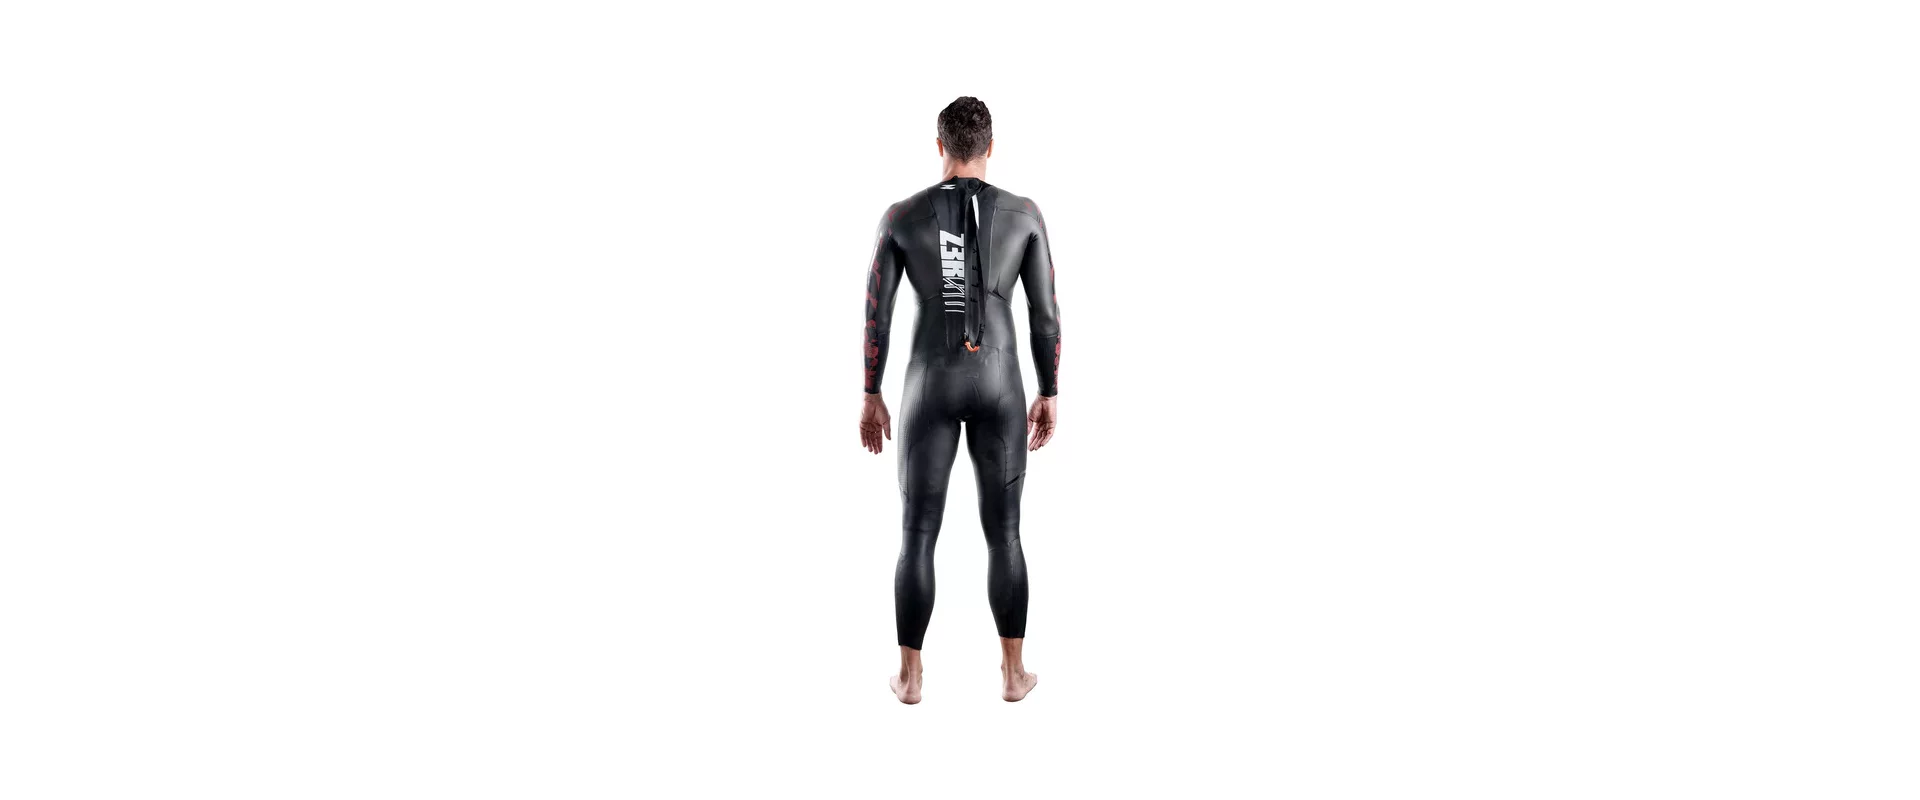 Z3R0D Flex Max Wetsuit / Мужской гидрокостюм для триатлона и открытой воды фото 2